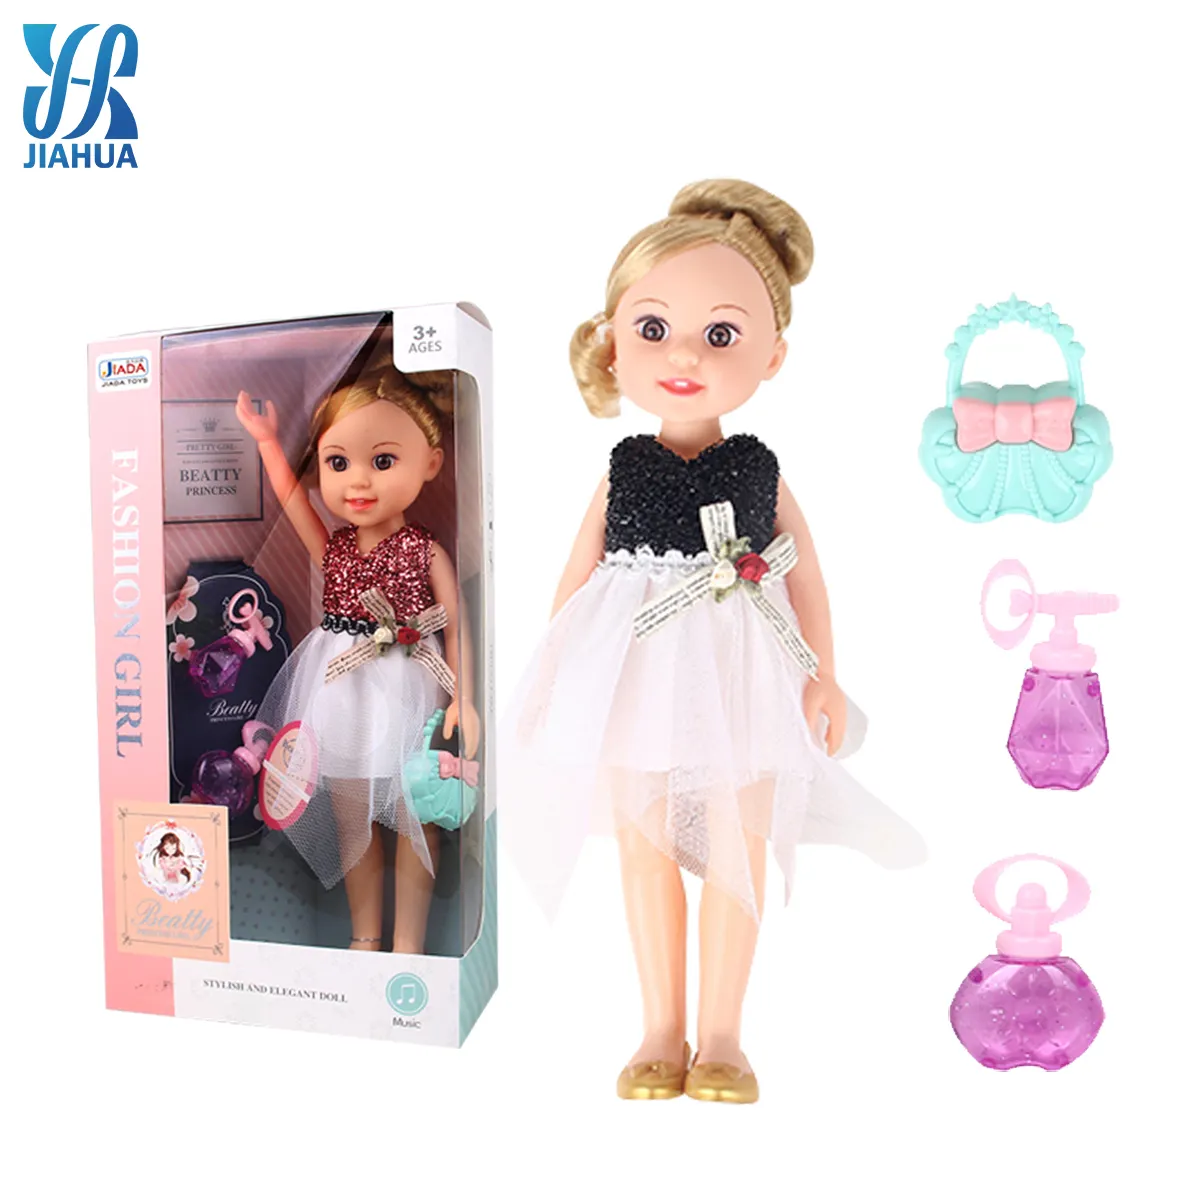 13นิ้วเพลงราคาถูก Muneca ตกแต่งตุ๊กตาร่างกายผู้ผลิตร้านค้าแช่แข็งสาวเจ้าหญิงของเล่นชุดแฟชั่นตุ๊กตา